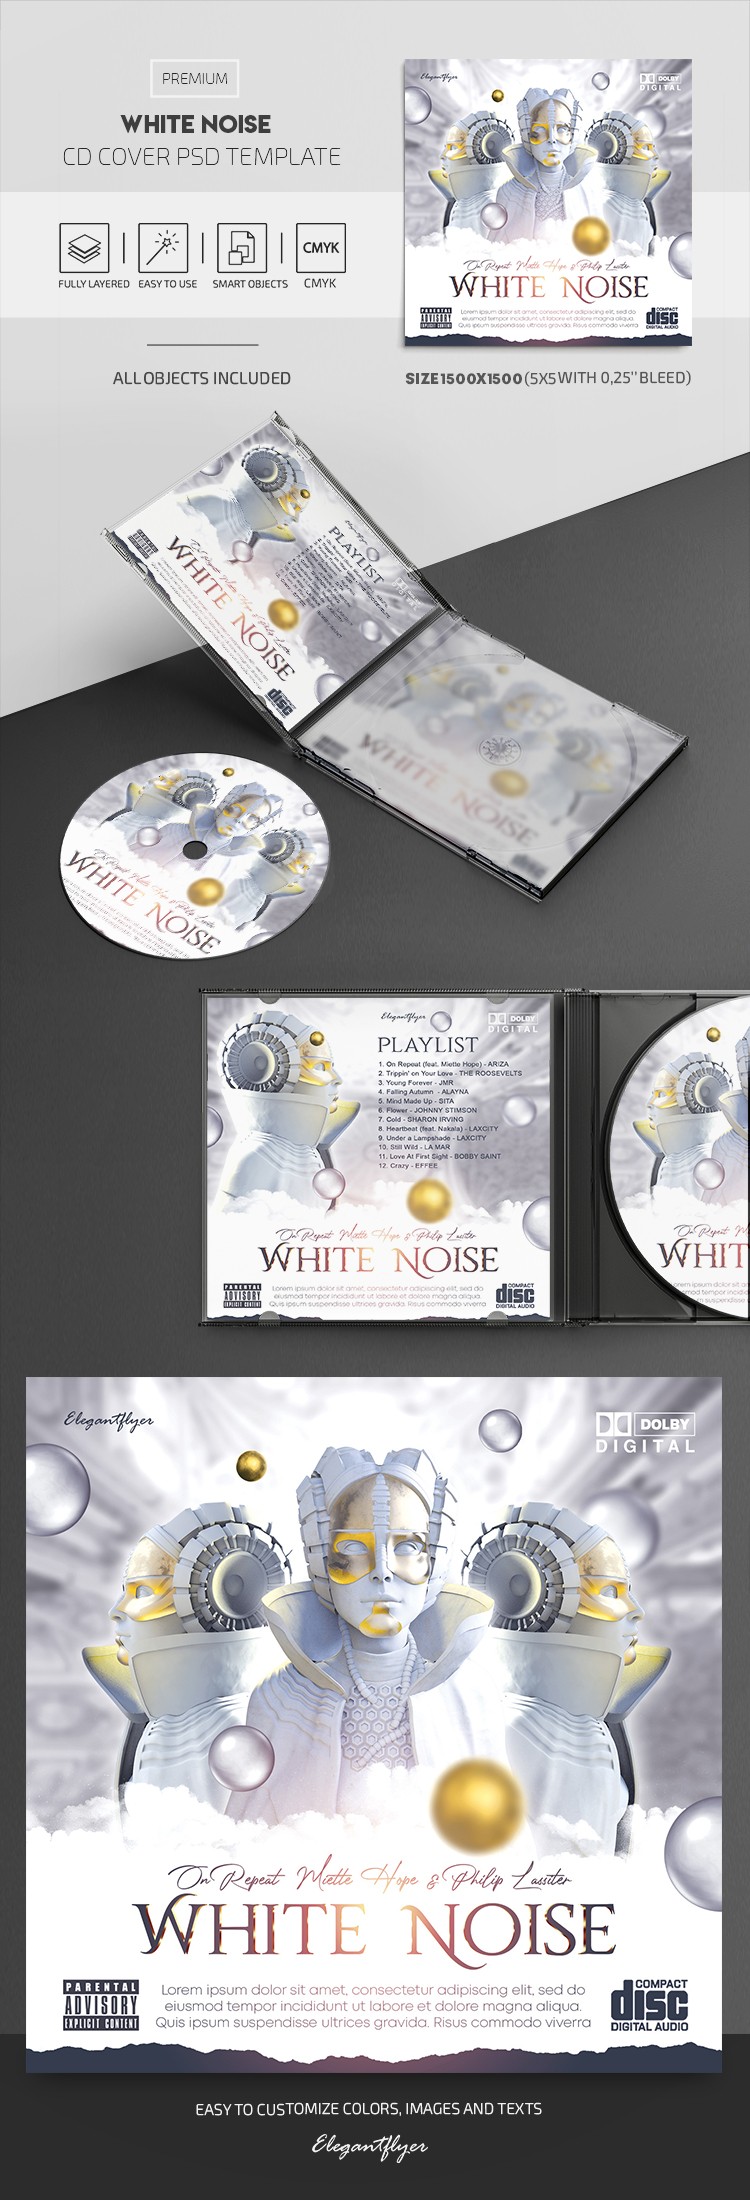 White Noise CD Cover by ElegantFlyer